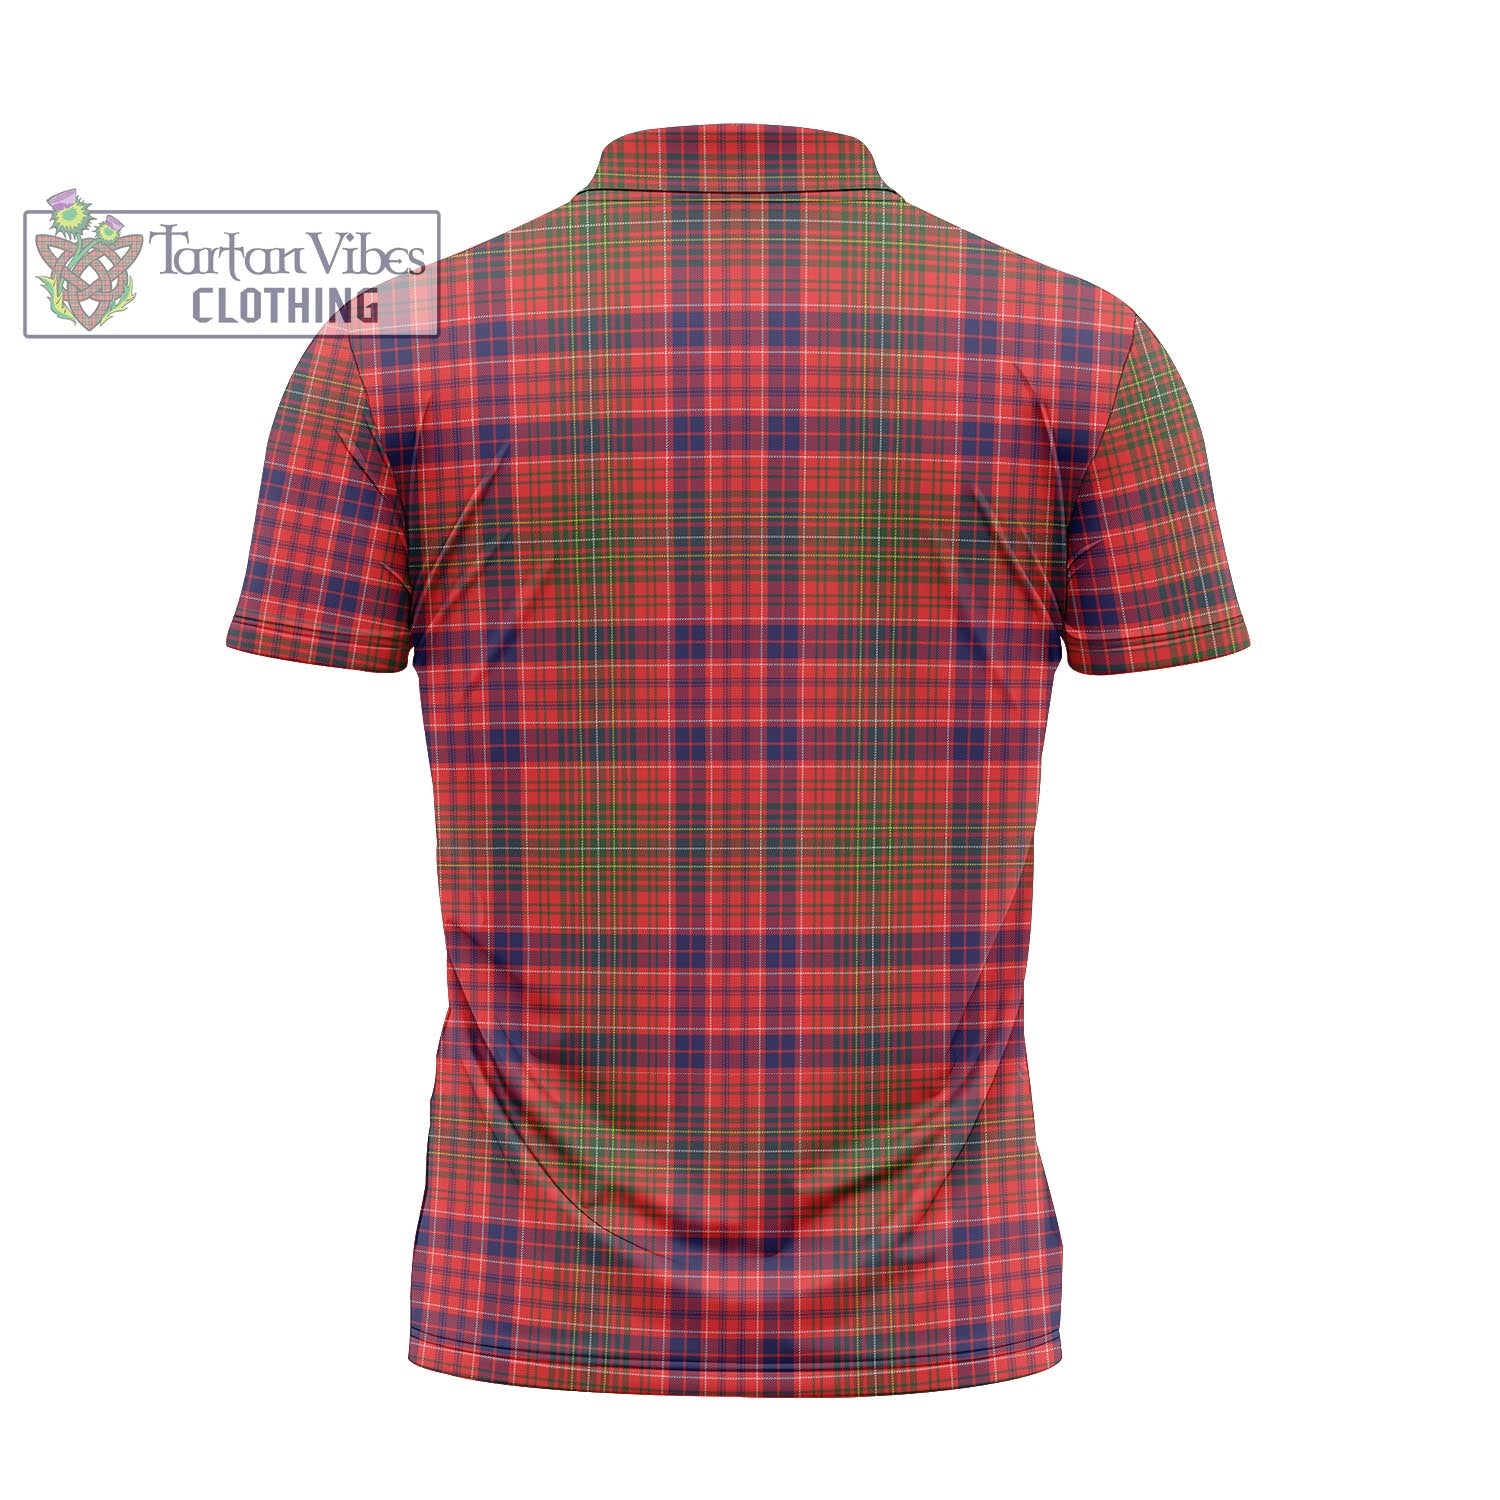 Tartan Vibes Clothing Lumsden Modern Tartan Zipper Polo Shirt with Family Crest